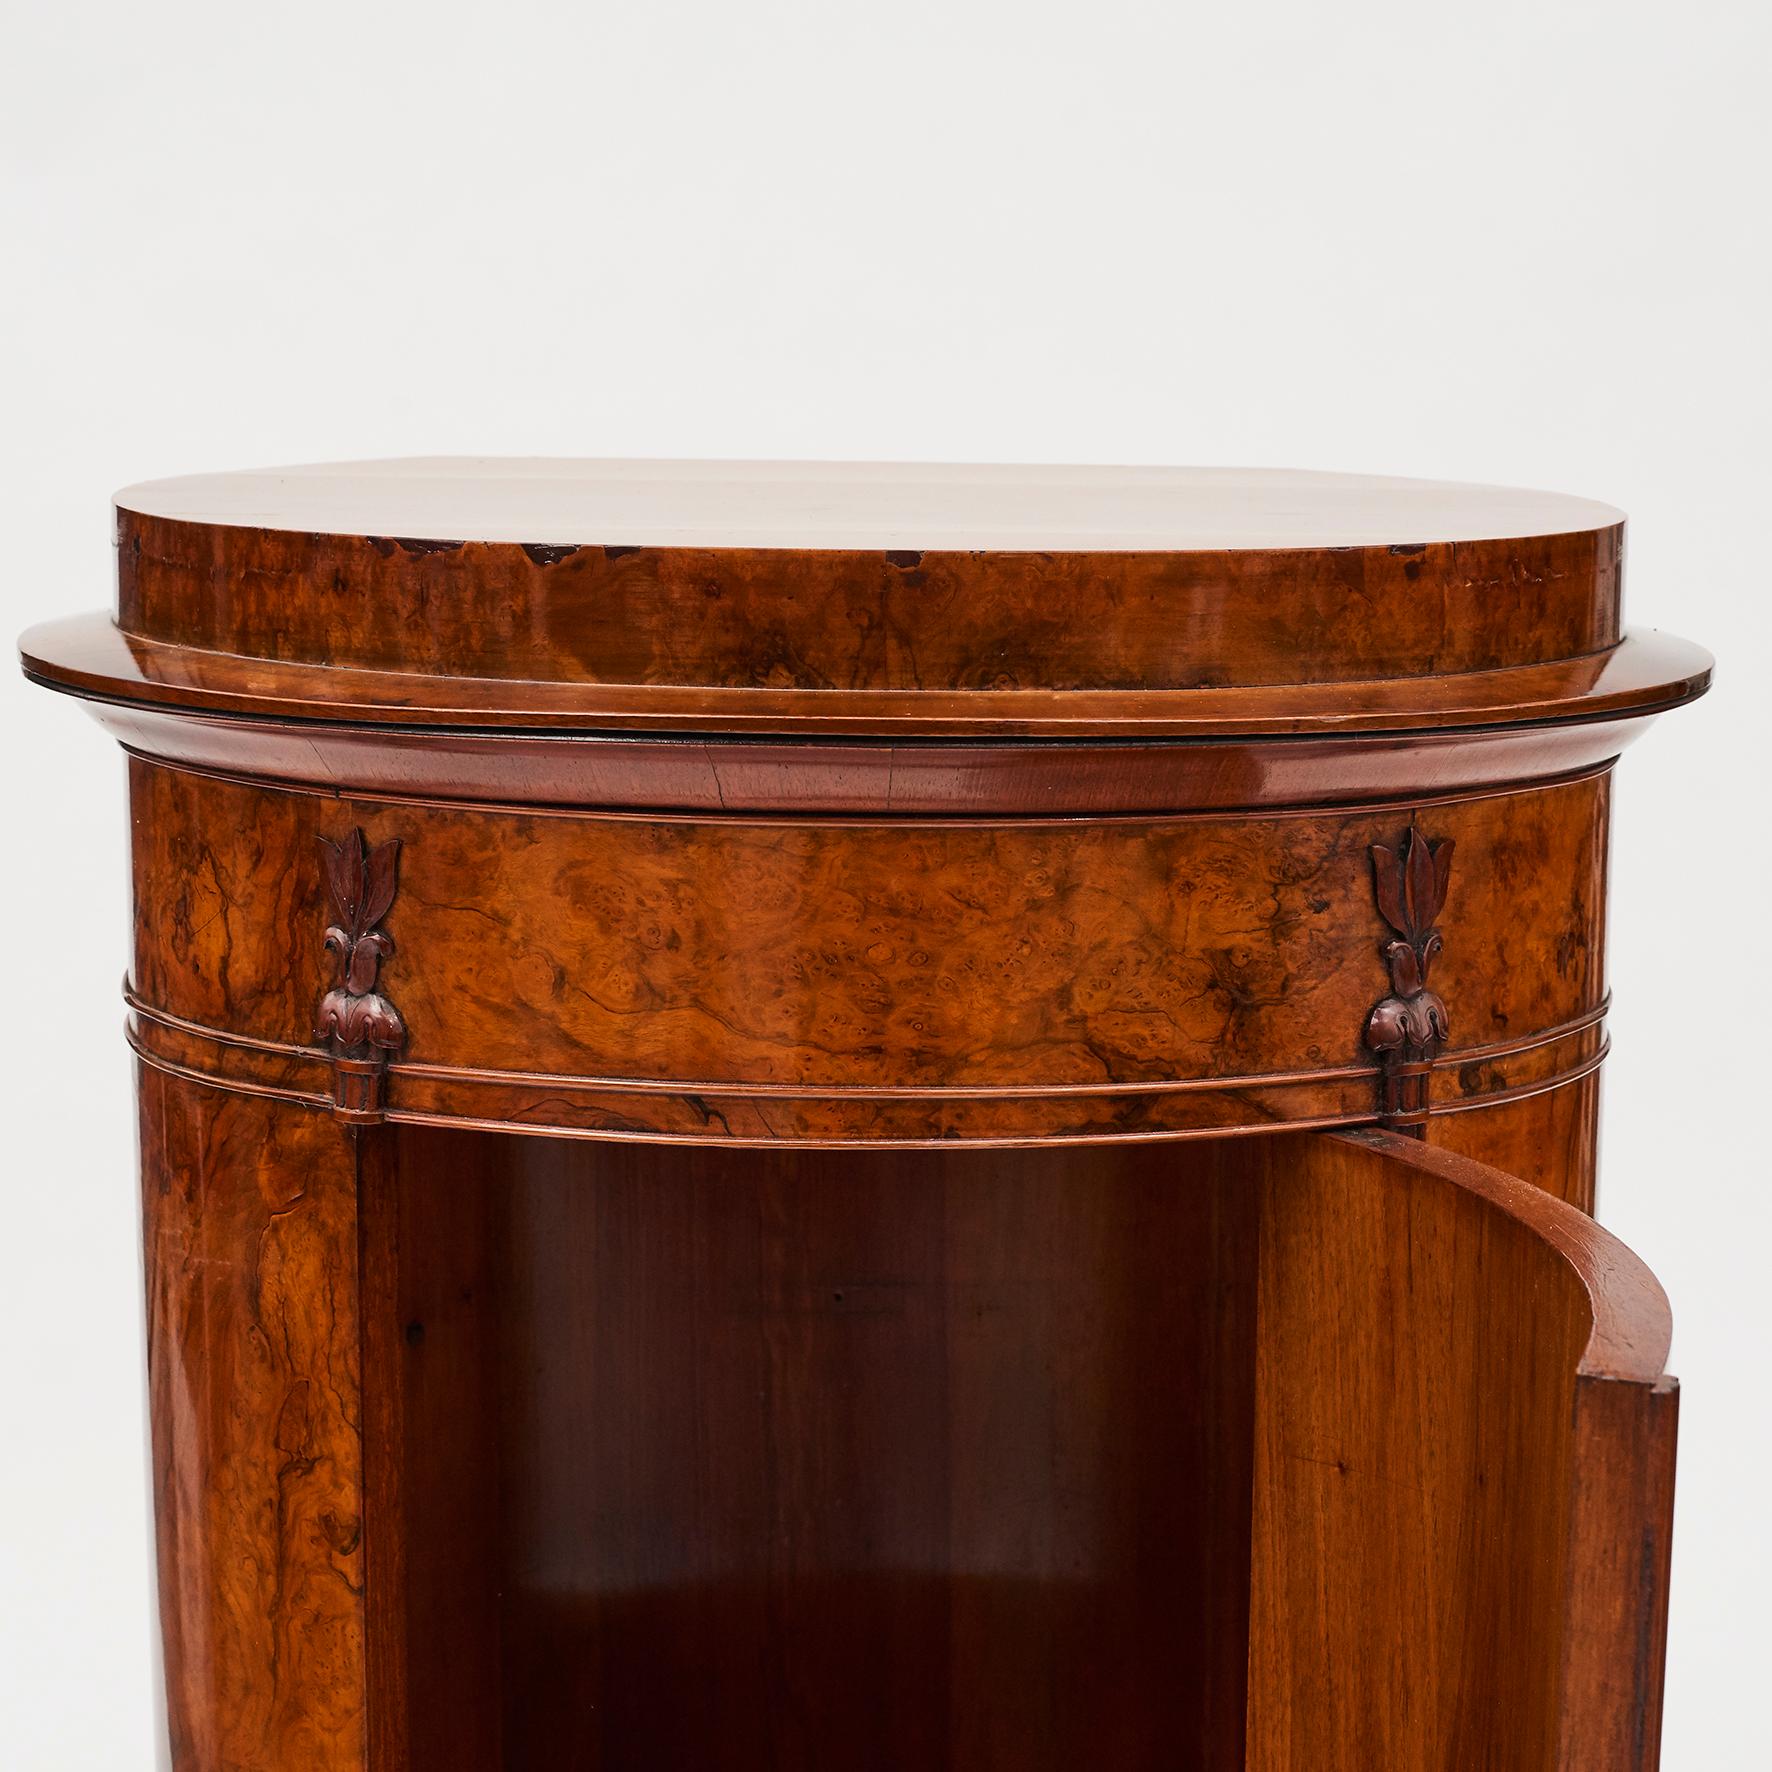 19th Century Cylinder Burl Walnut Pedestal Cabinet, Copenhagen, 1830-1840